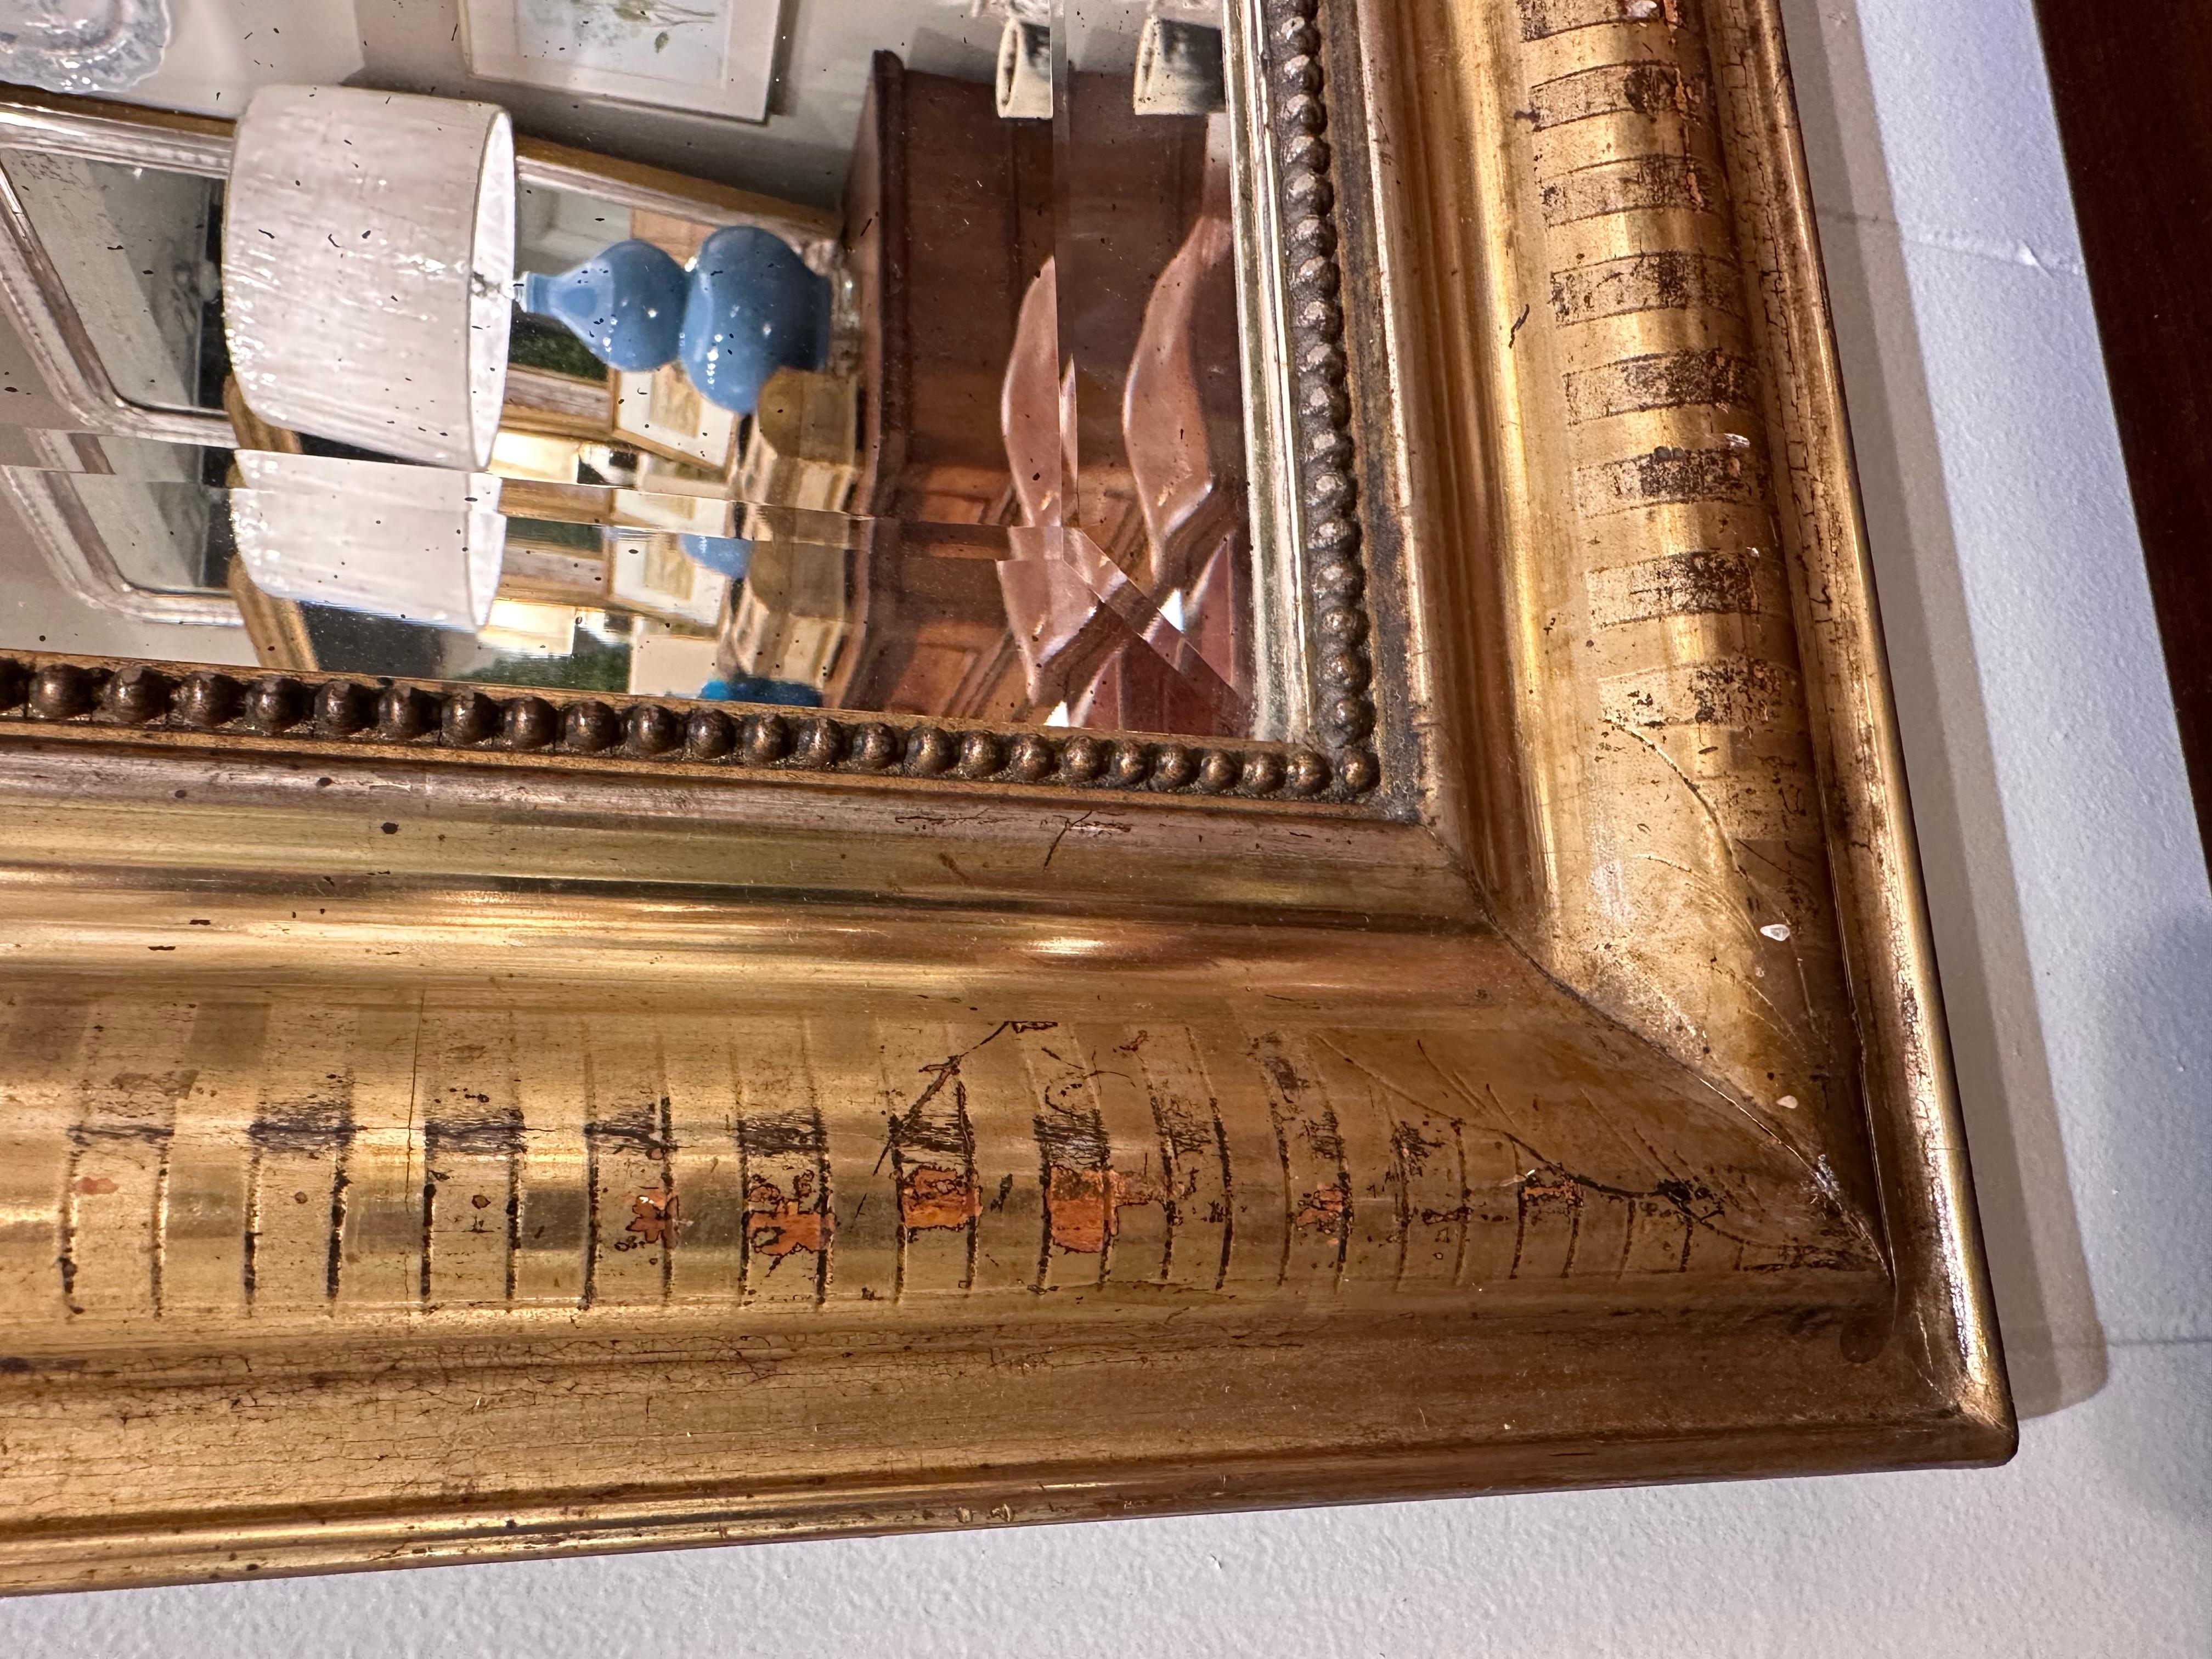 Cet exquis miroir Louis Philippe antique, orné d'une finition dorée, apporte sans effort un charme intemporel à n'importe quel espace. Ses détails ornés et son design classique en font une pièce maîtresse captivante, reflétant à la fois le style et